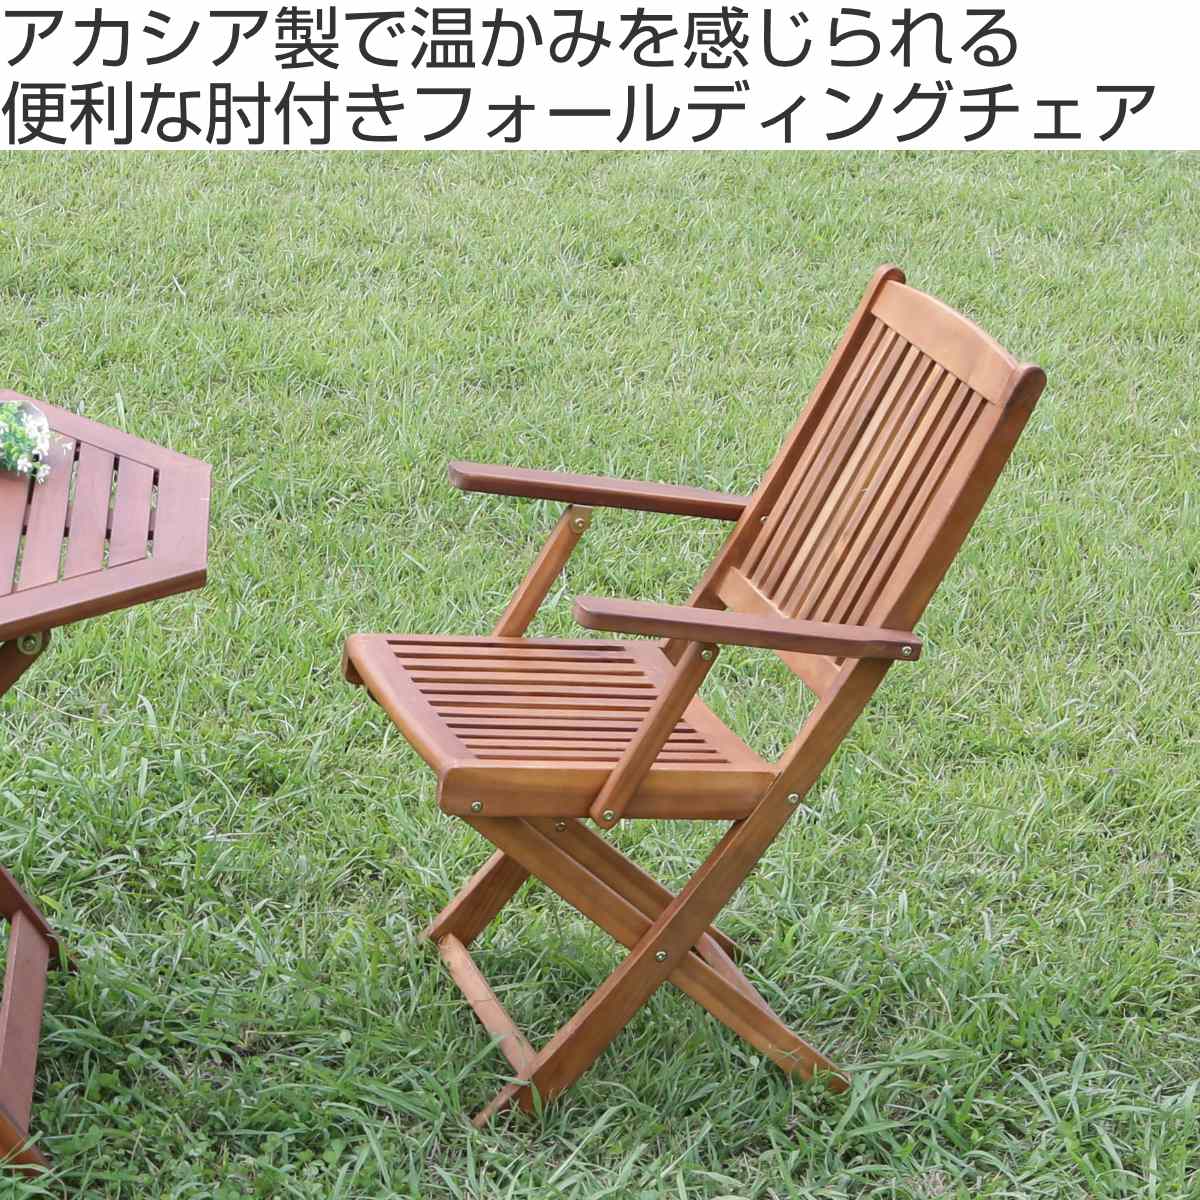 熱い販売 折りたたみ椅子 アウトドアチェア アカシア 幅59.5cm